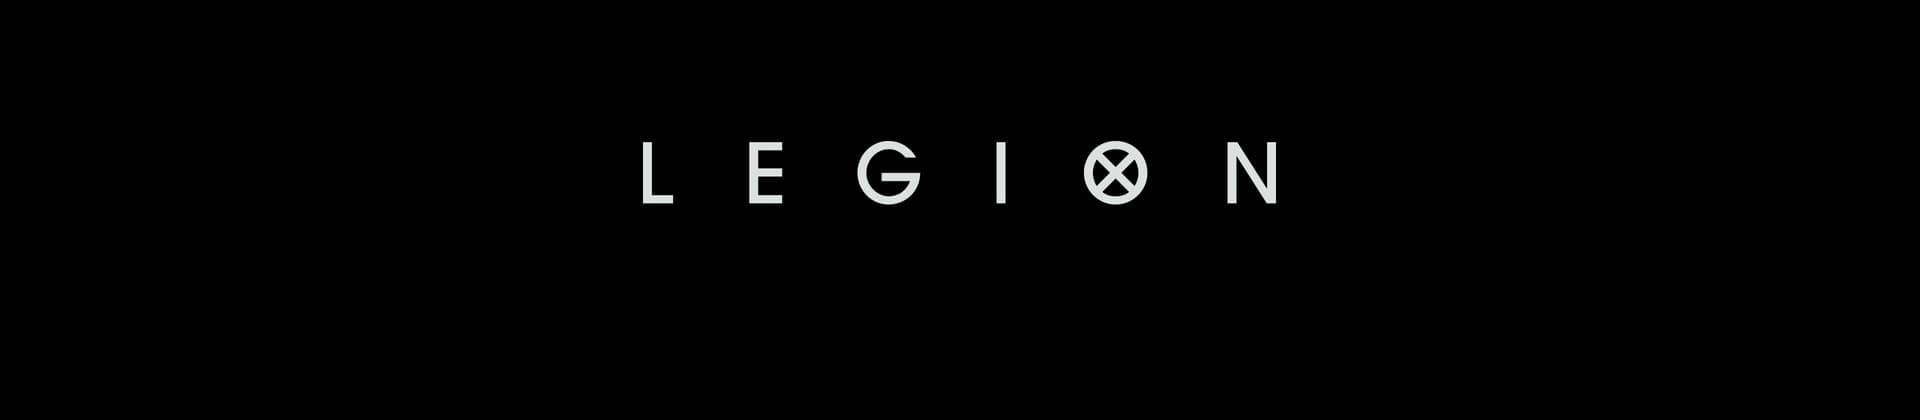 Legion TV Show Season 1 Logo On Black